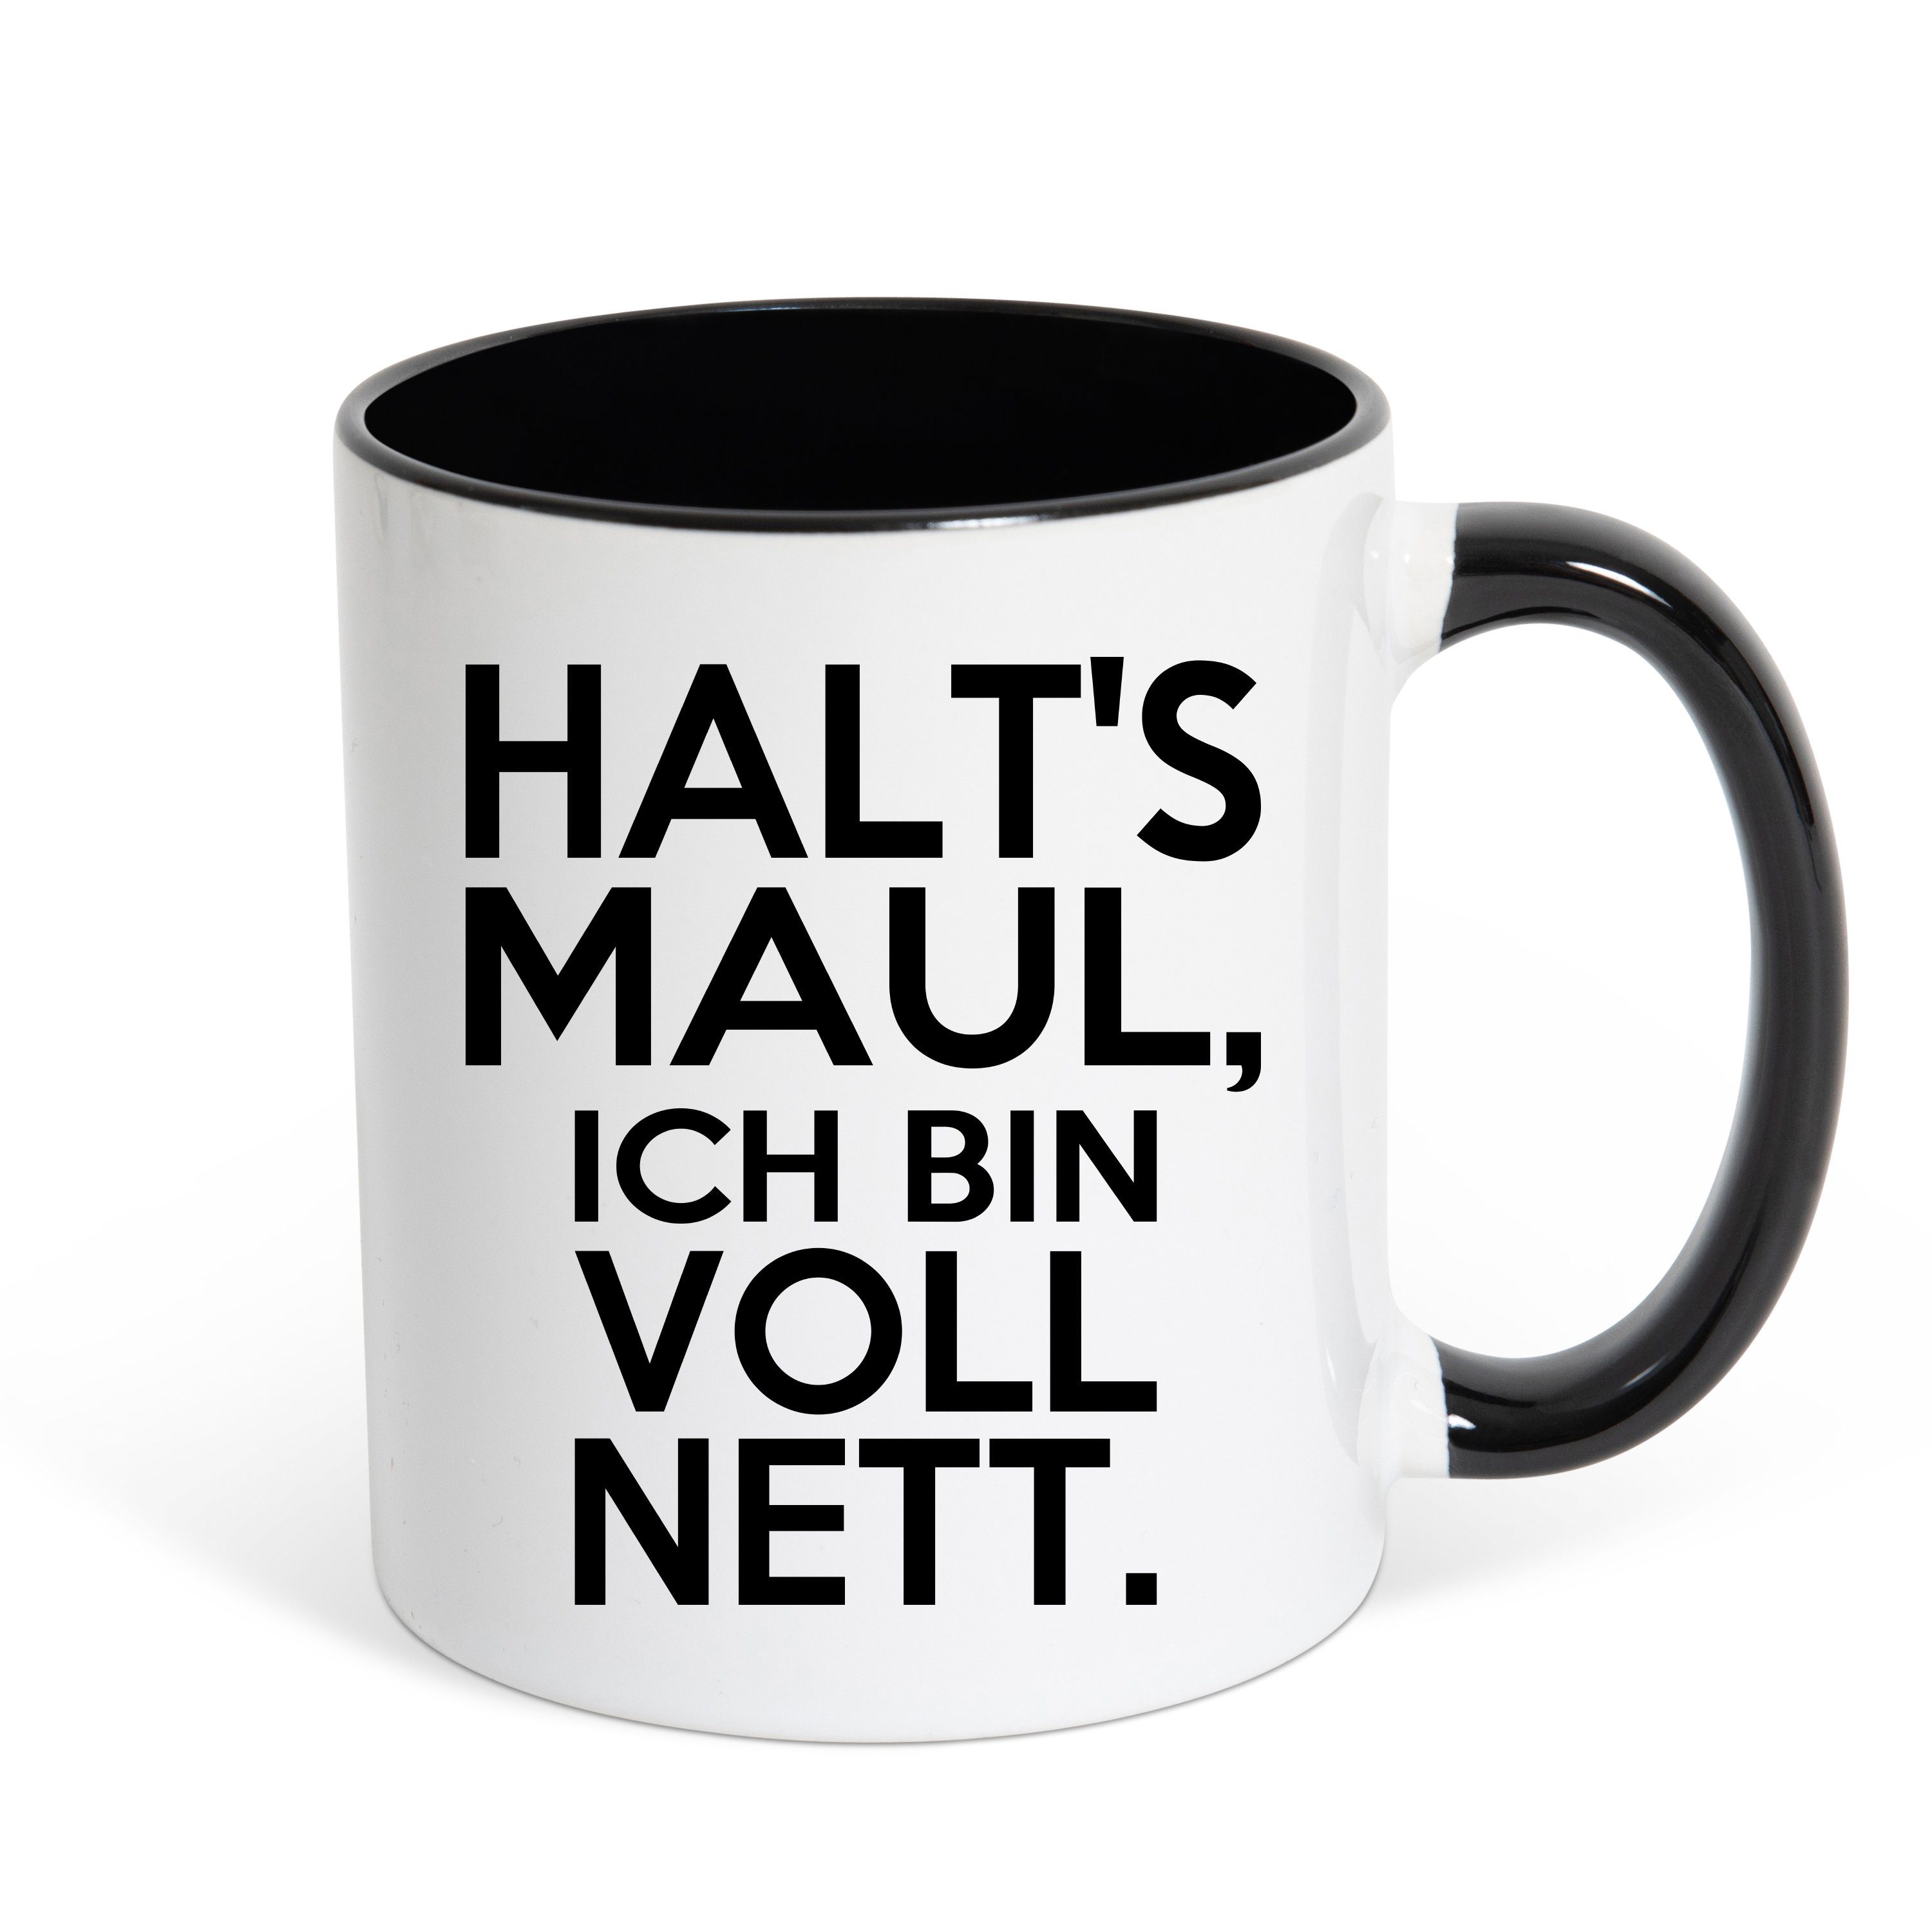 Youth Designz Tasse HALT'S MAUL, Spruch NETT BIN Kaffeetasse ICH lustigem VOLL Weiss/Schwarz Keramik, Geschenk, mit